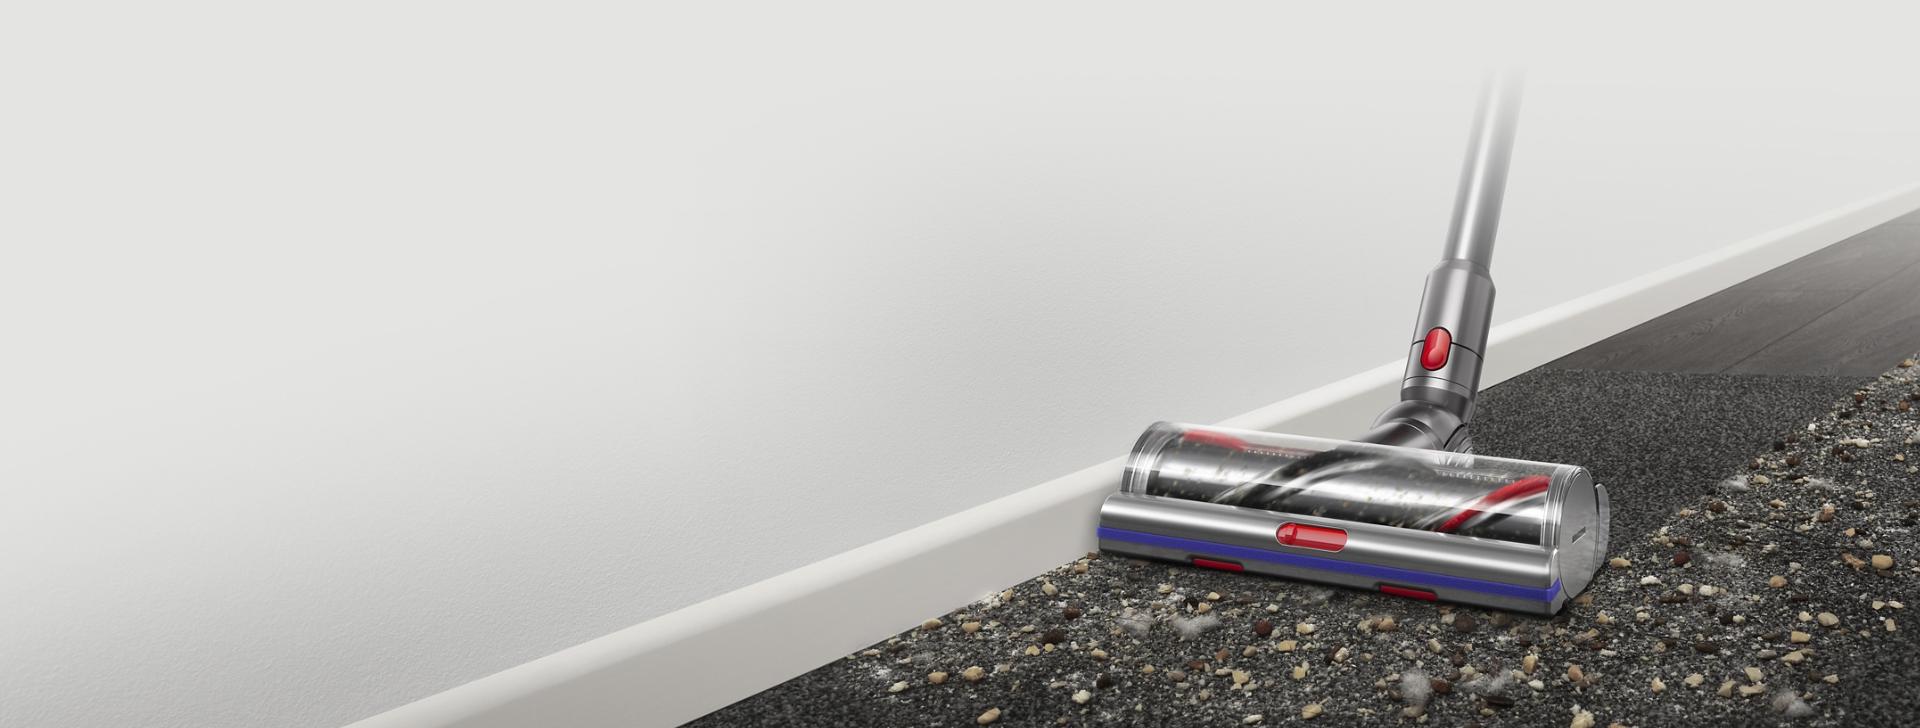 Inteligentní podlahová hubice Digital Motorbar s technologií proti namotávání vlasů vysávající mezi hladkou podlahou a kobercem.